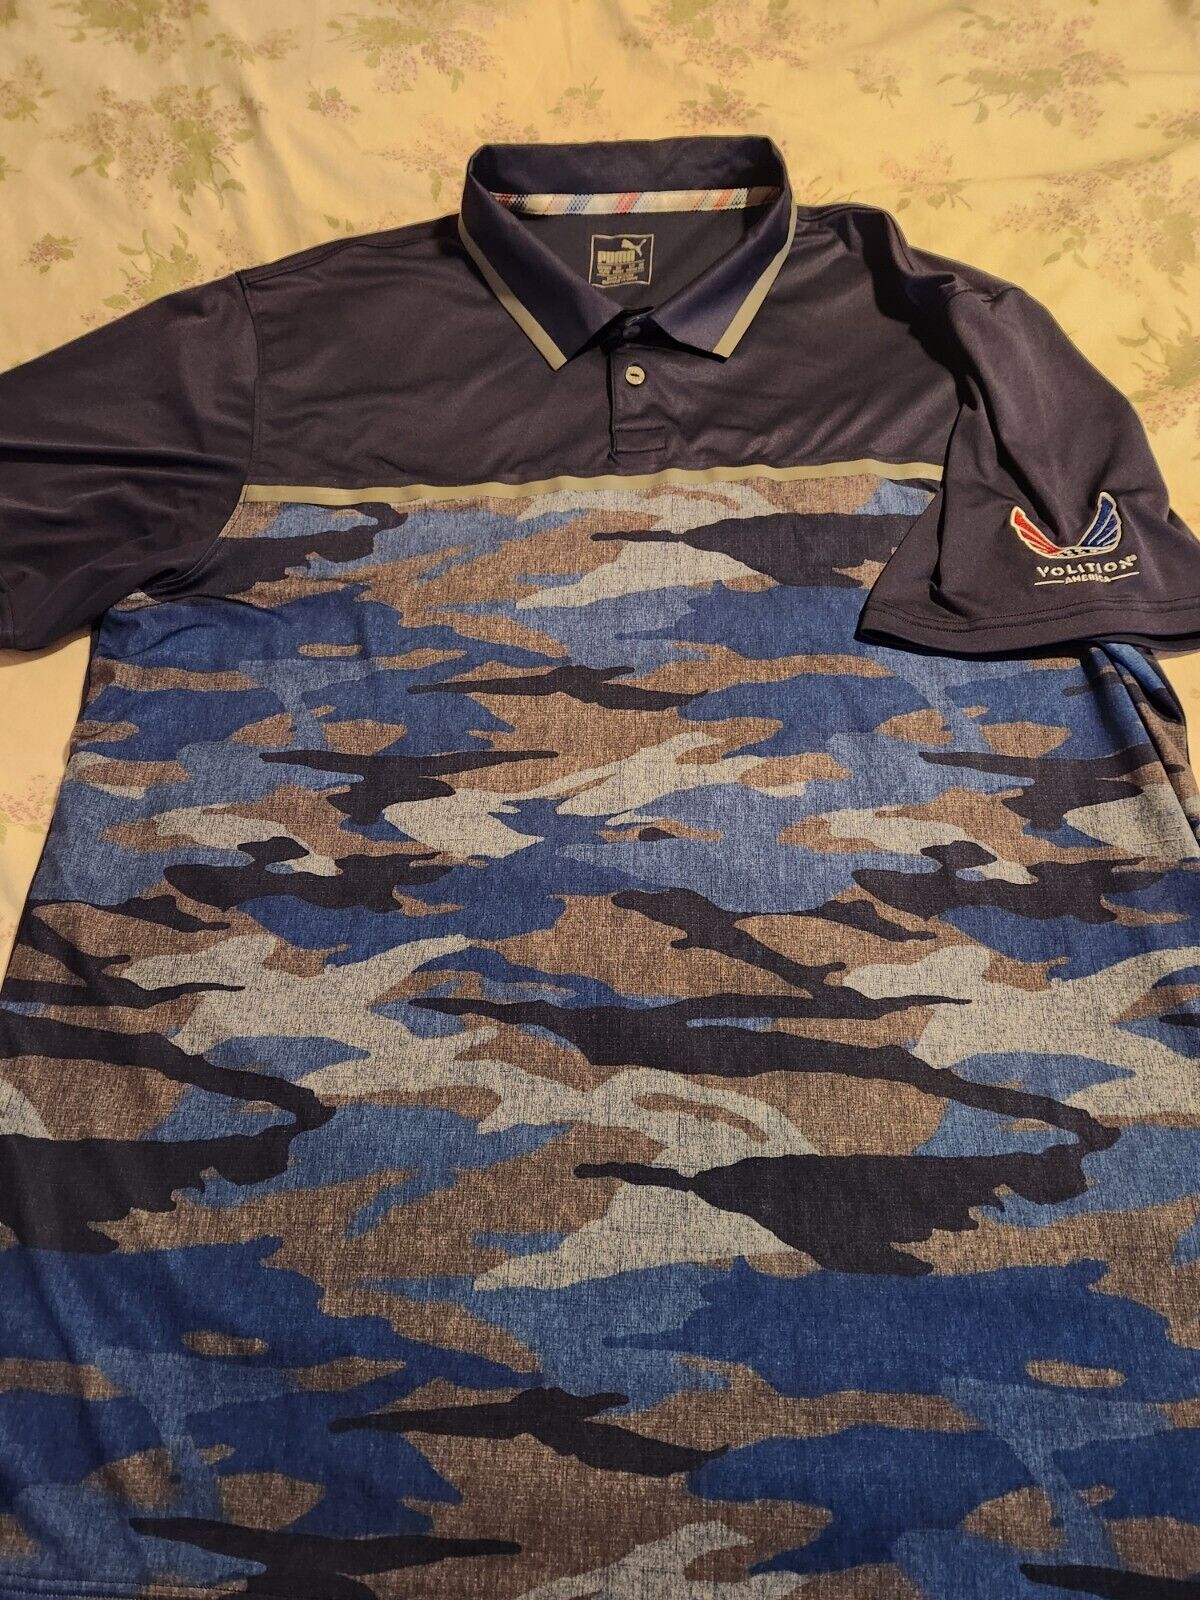 Men\'s Puma Volition America Blue Camo Dry Cell Polo Golf Shirt Size XL